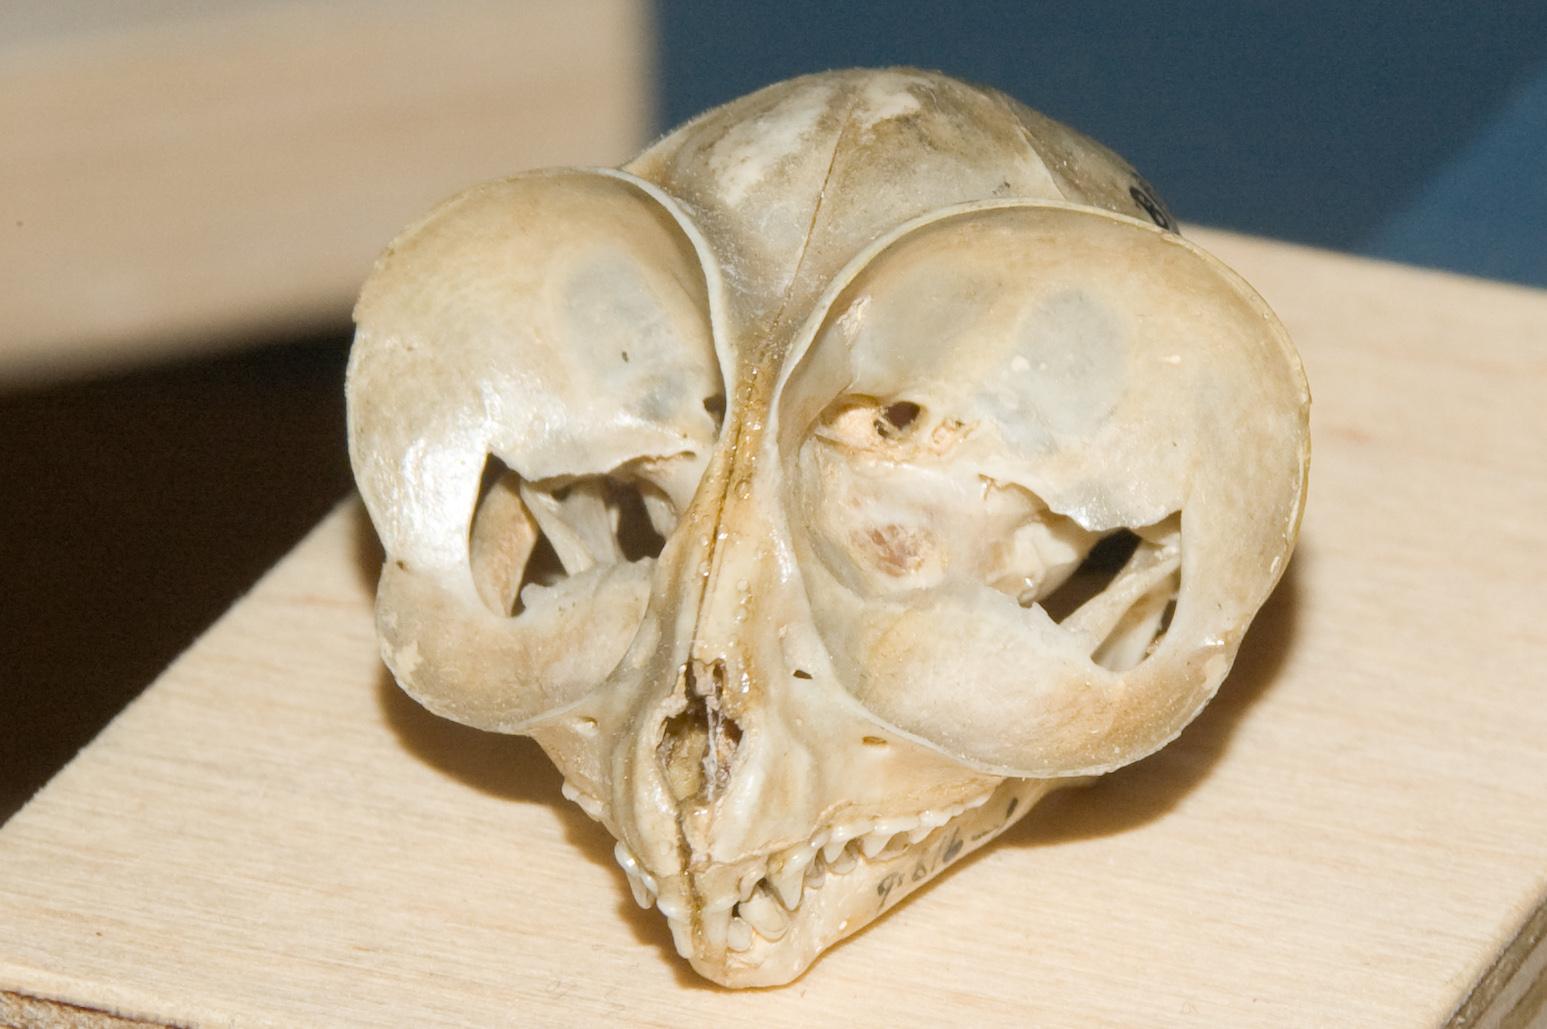 Front view of tarsier skull.